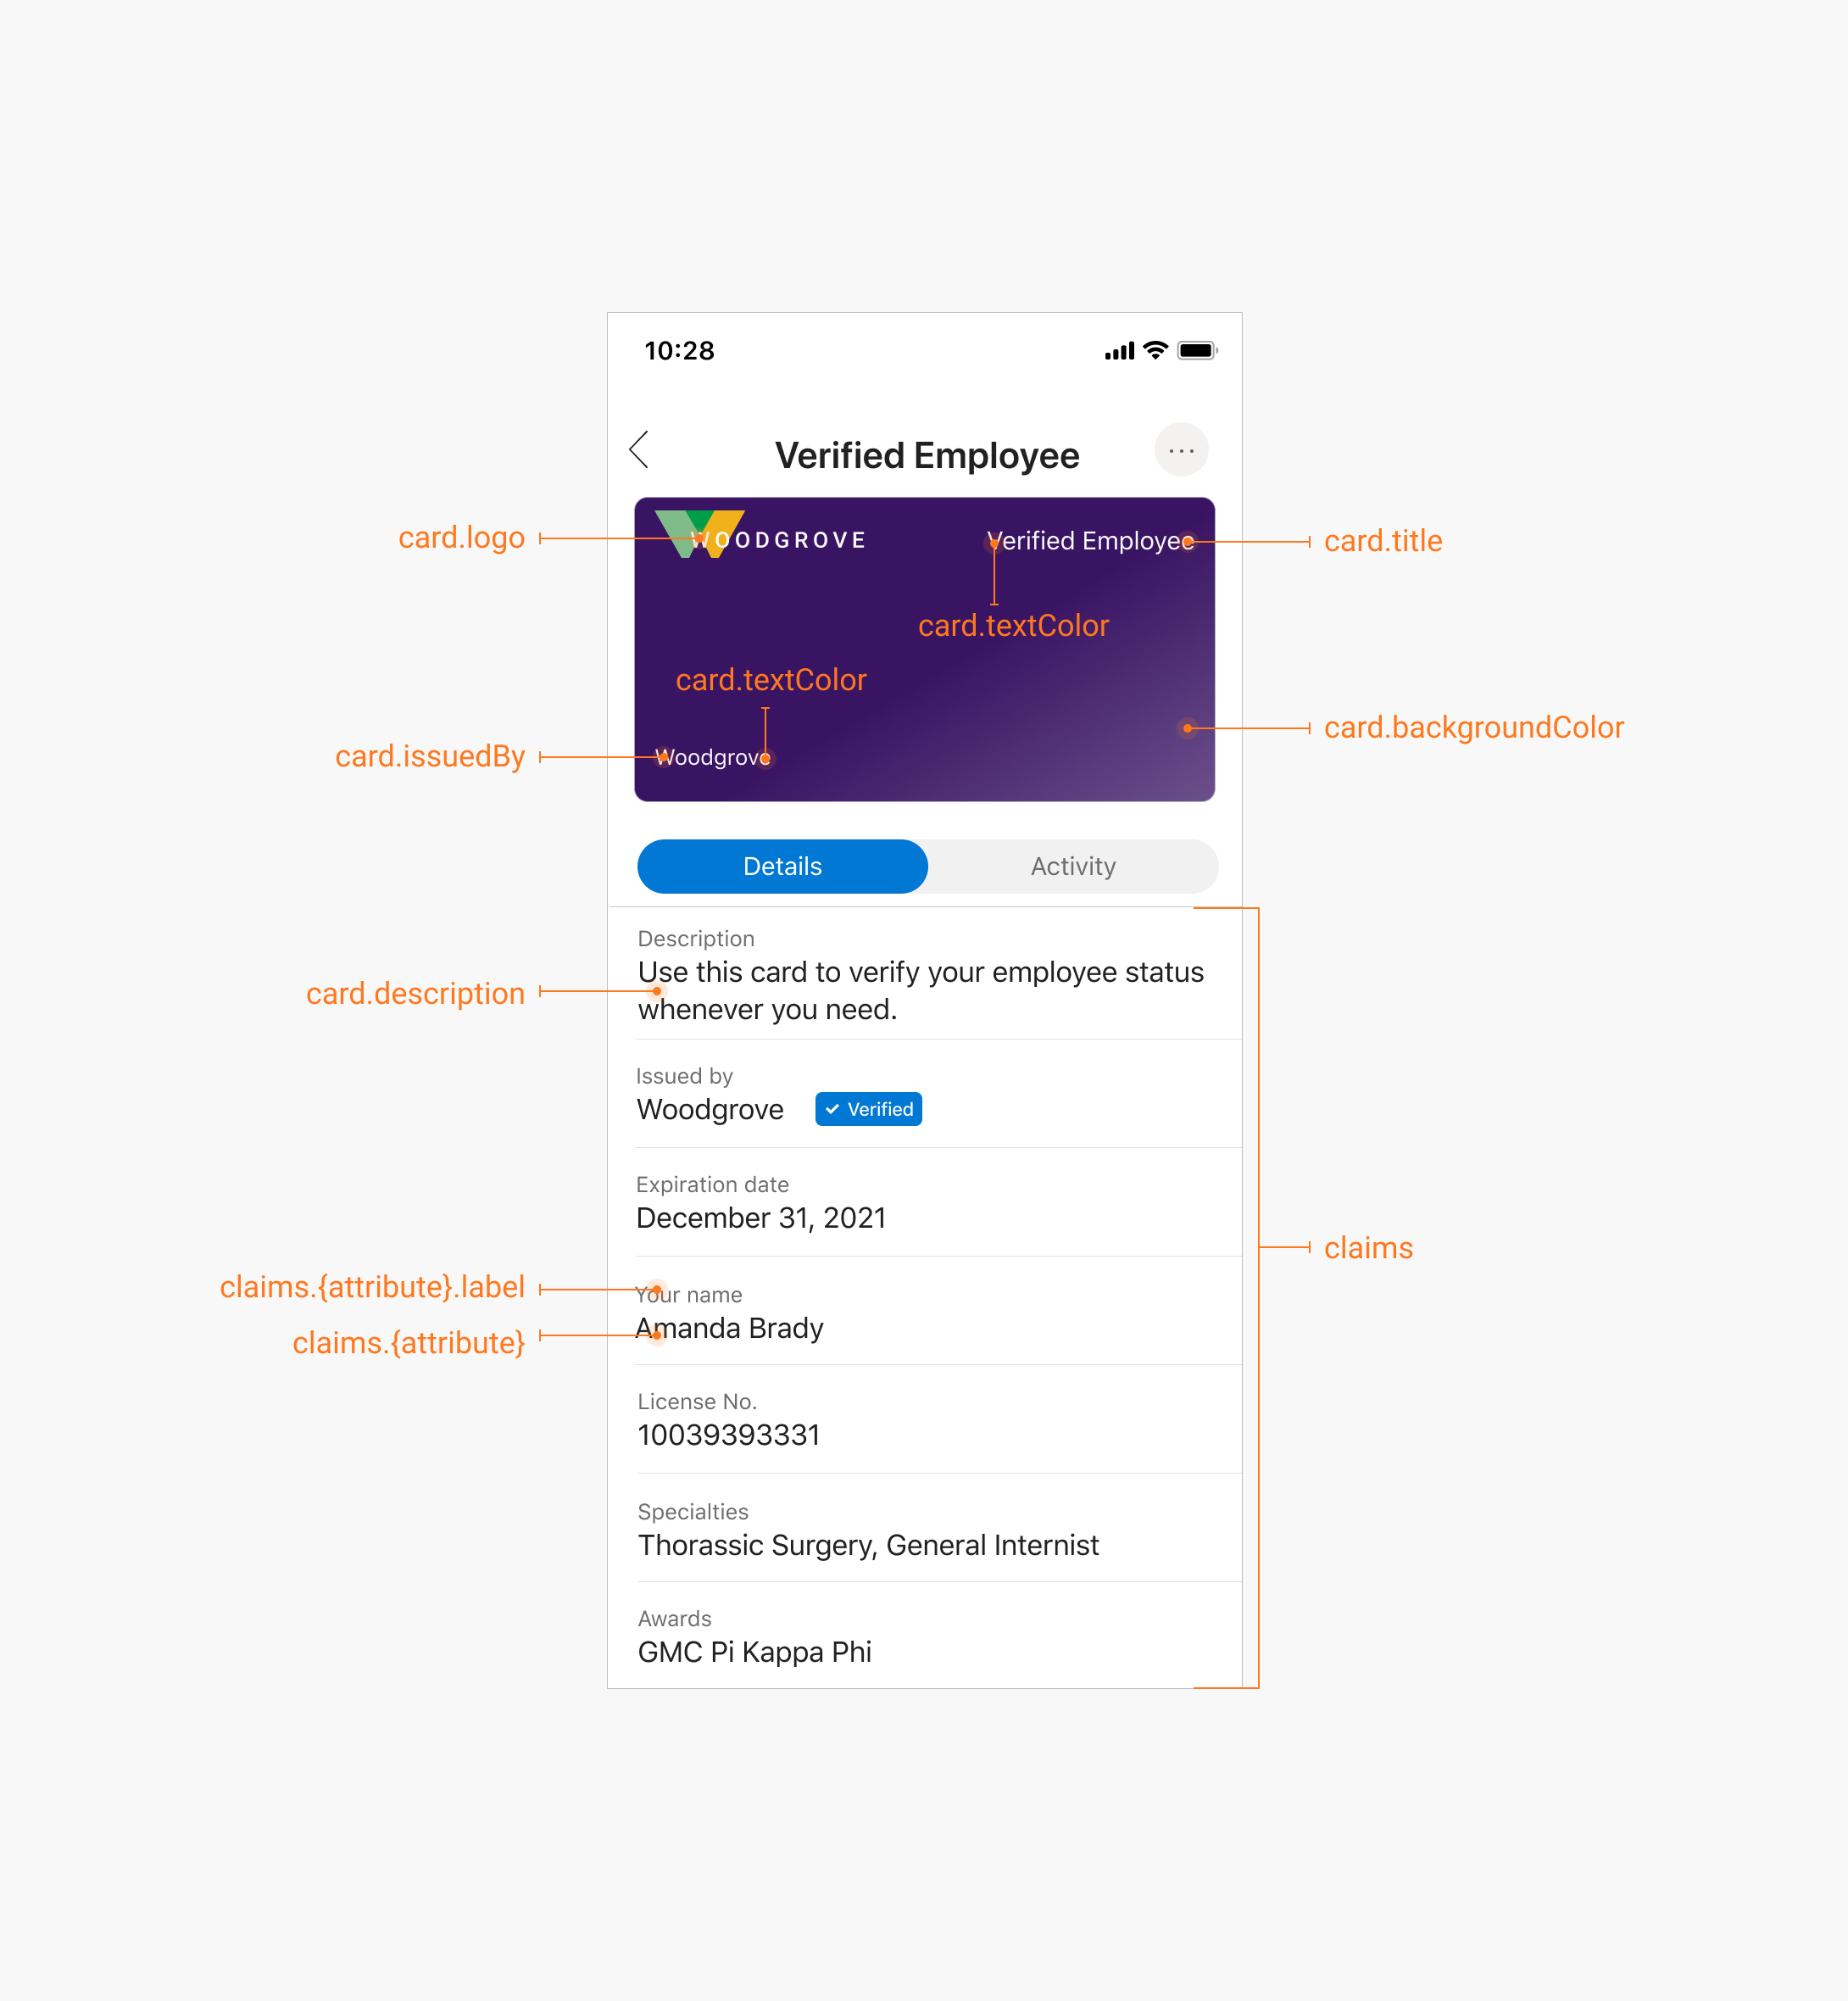 Zrzut ekranu przedstawiający zweryfikowaną kartę poświadczeń w aplikacji Authenticator, która wywołuje kluczowe elementy.